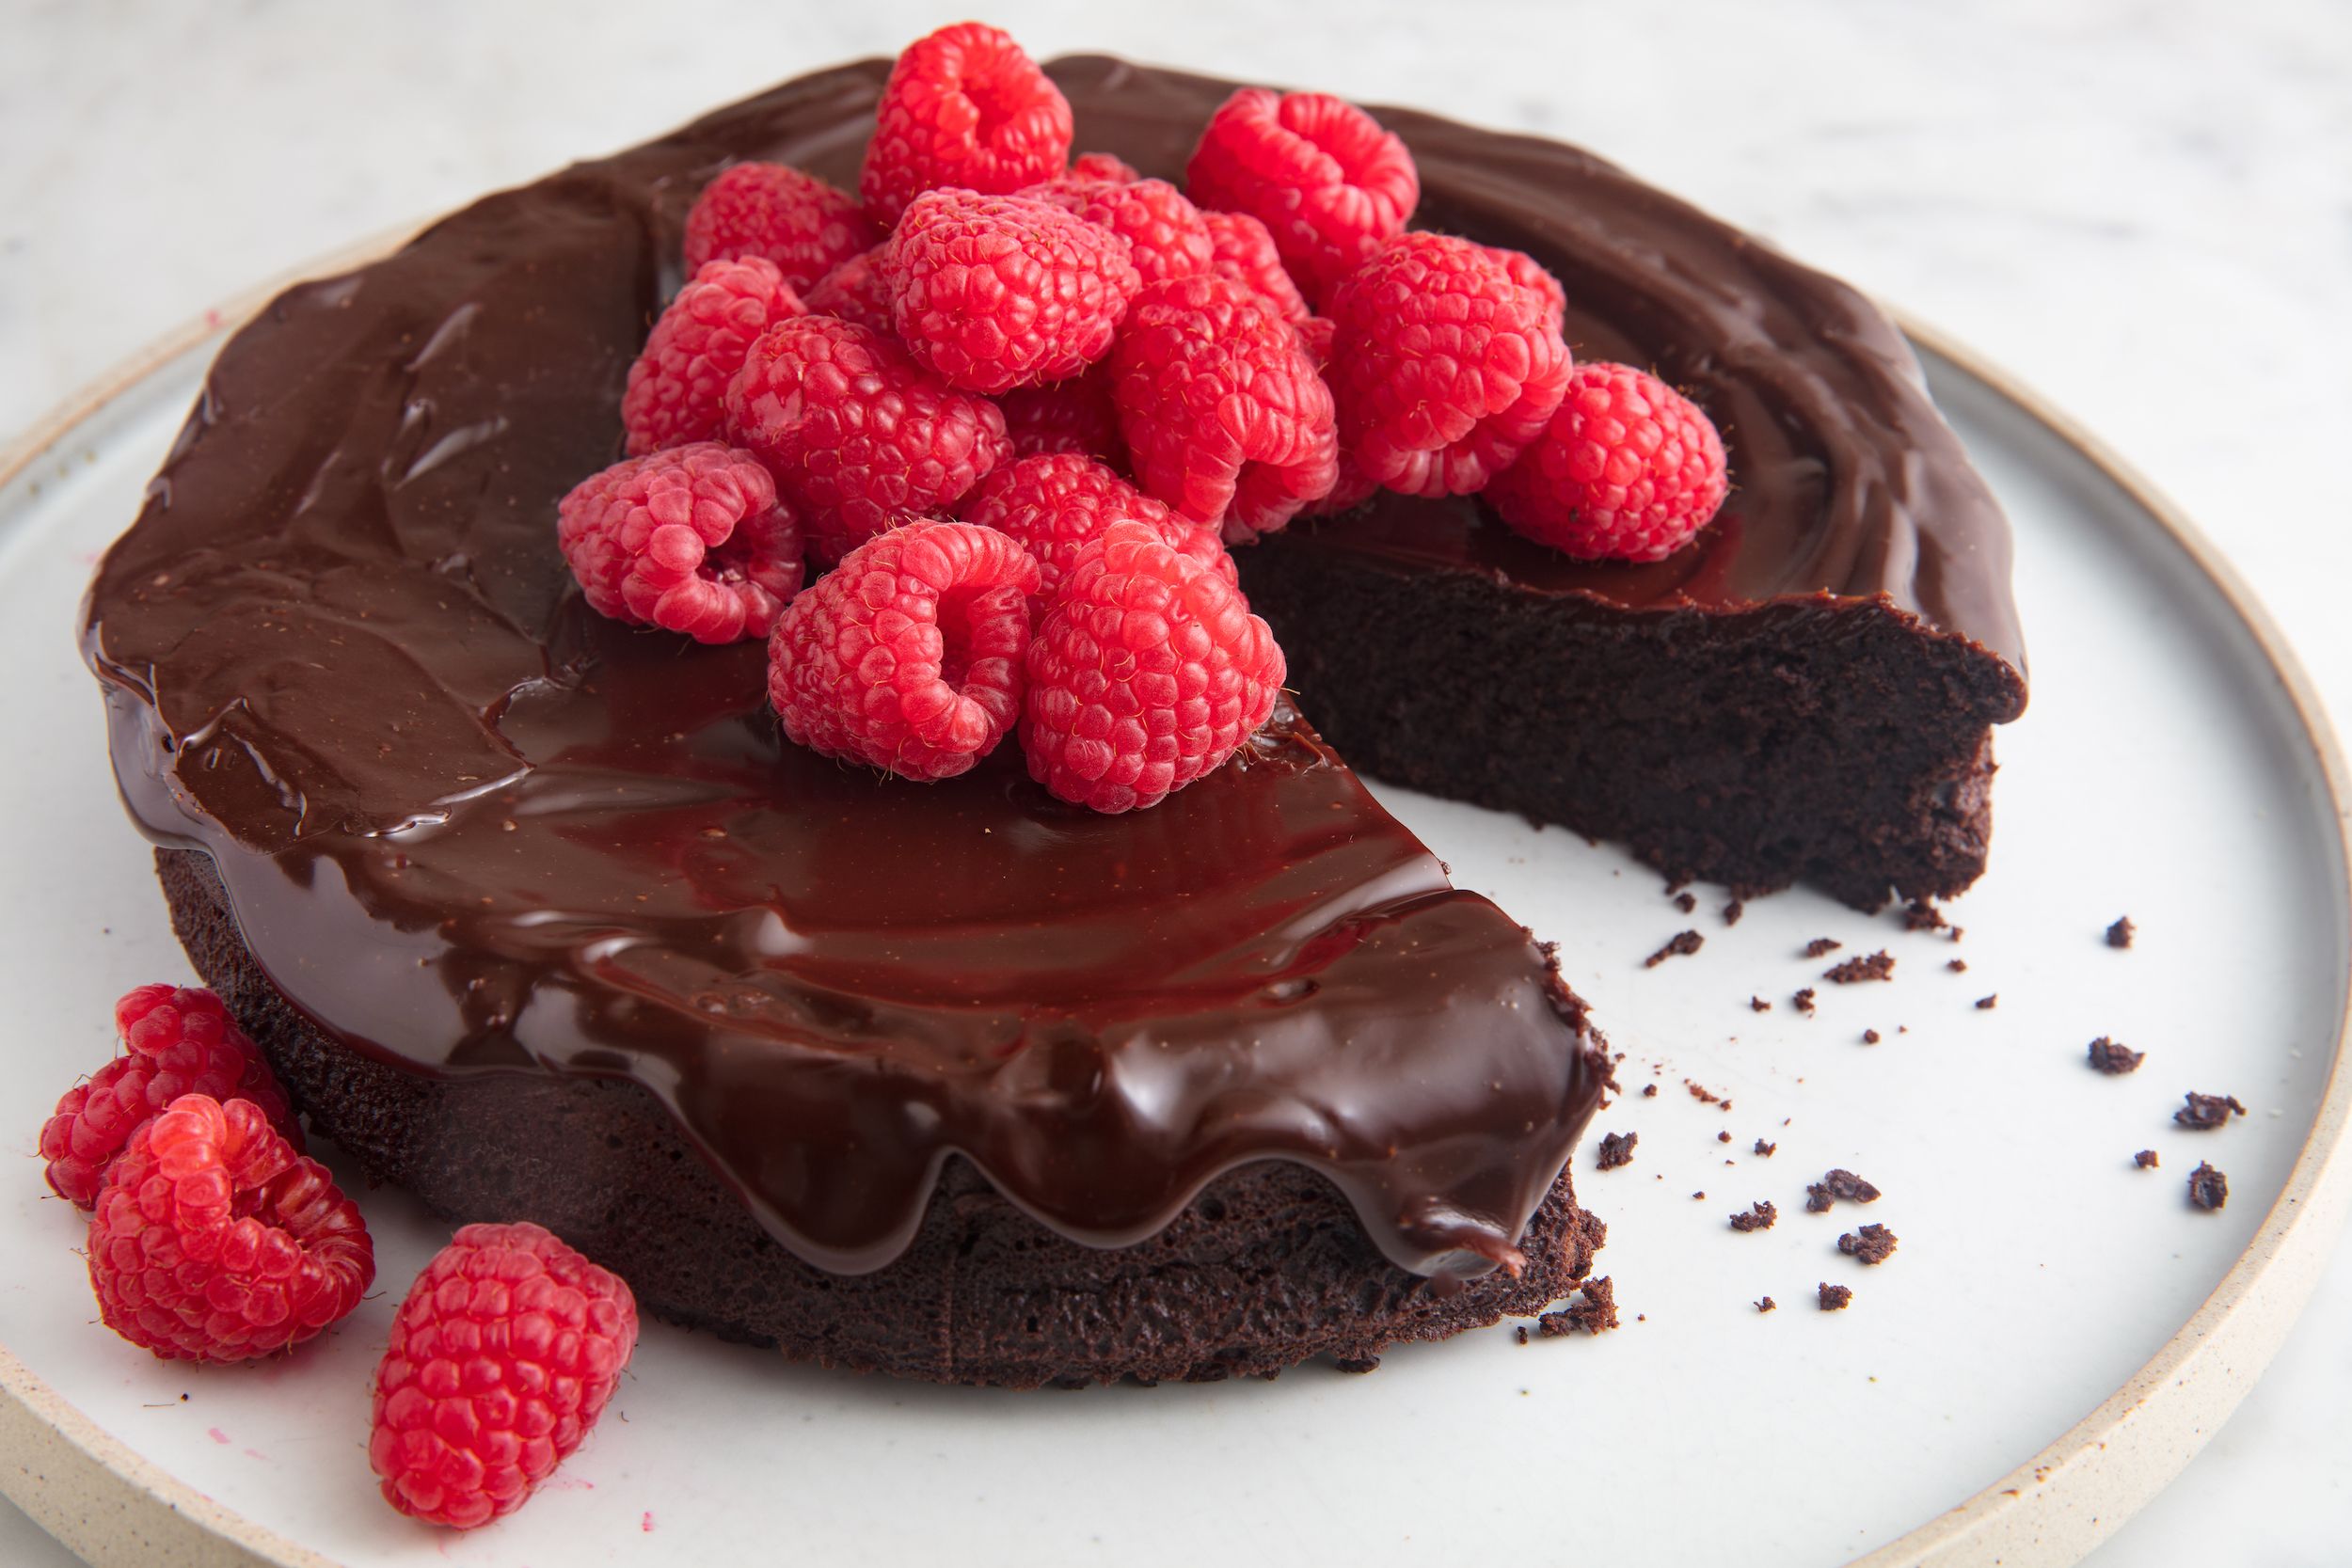 Cake flourless chocolate